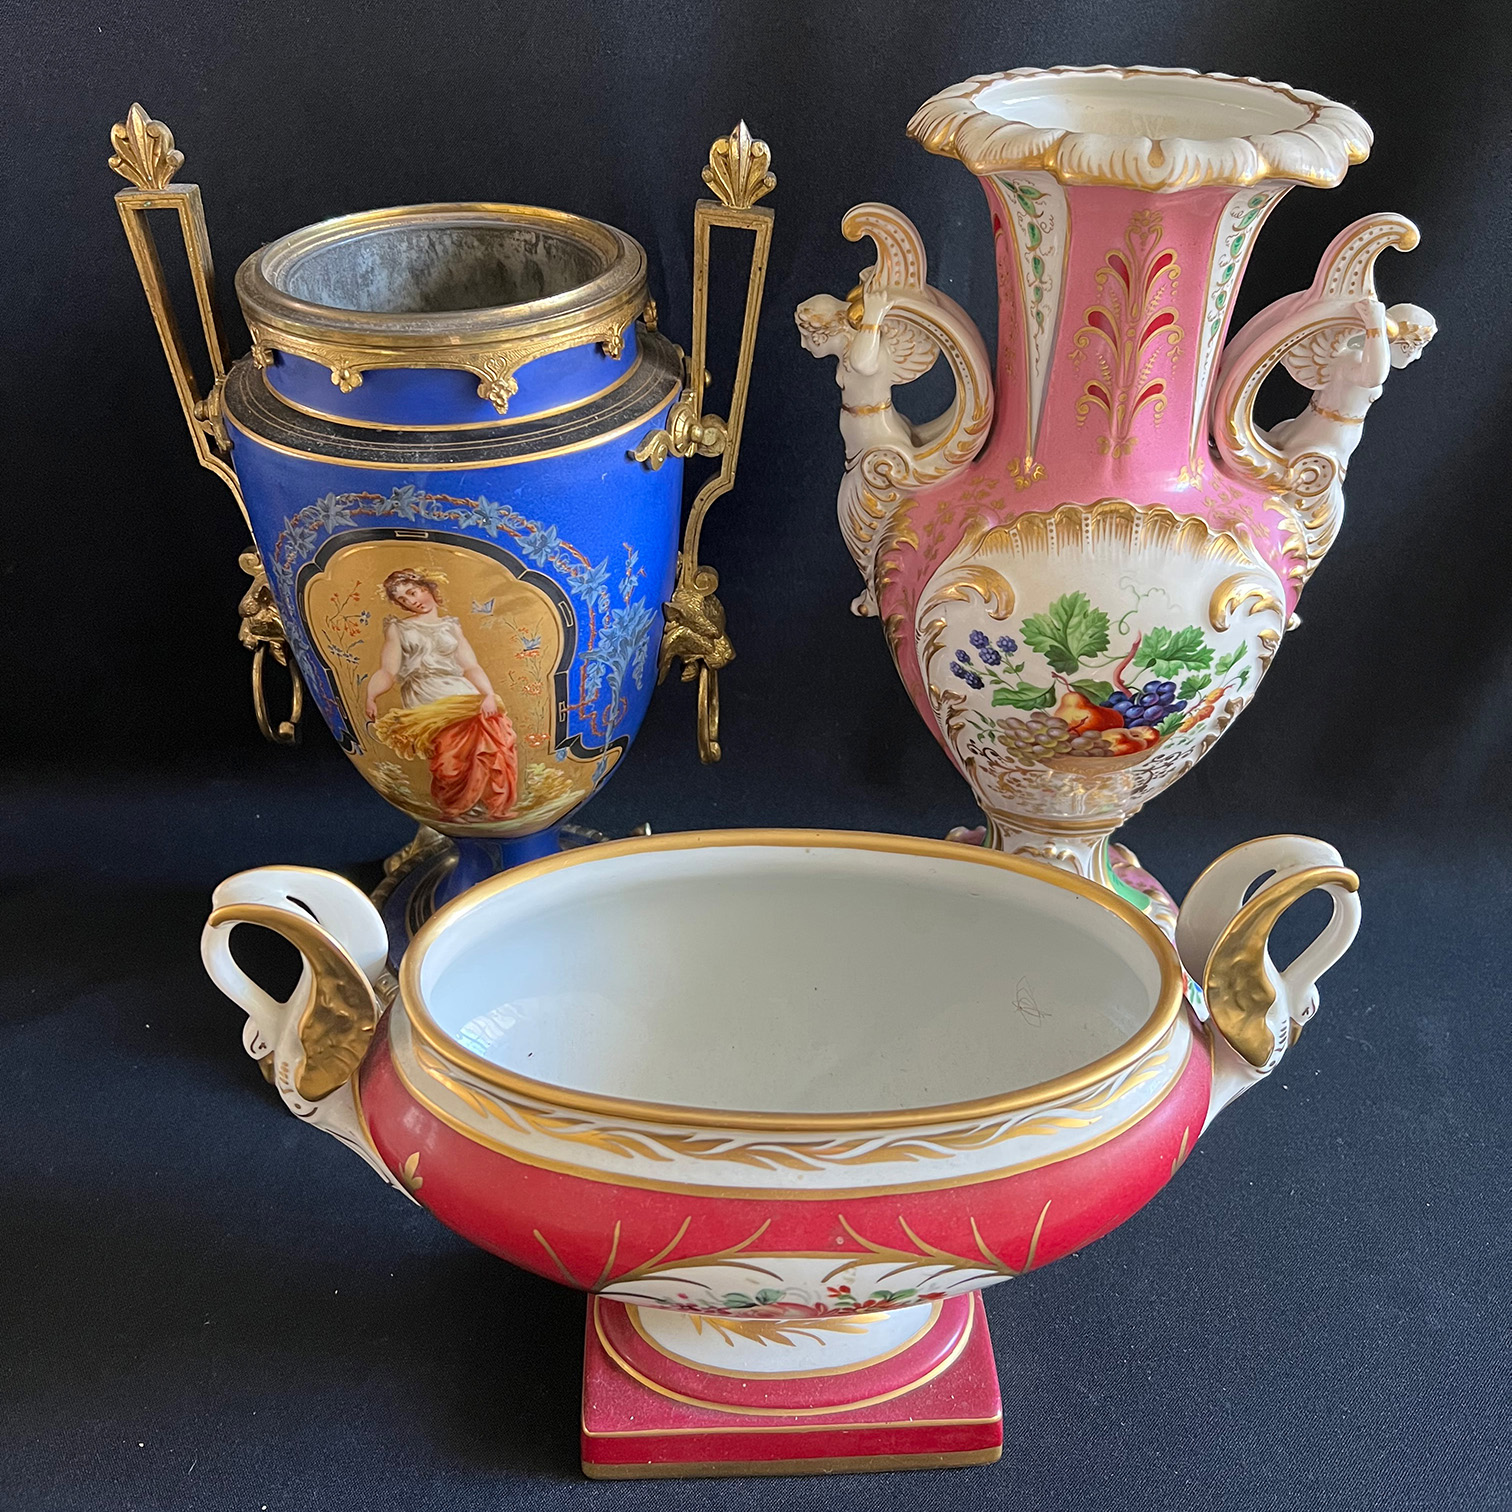 3 Sammlerobjekte, Porzellan, 19. Jh., bzw um 1900, Altersspuren: blaugrundige Vase mit Darstellung - Image 4 of 5